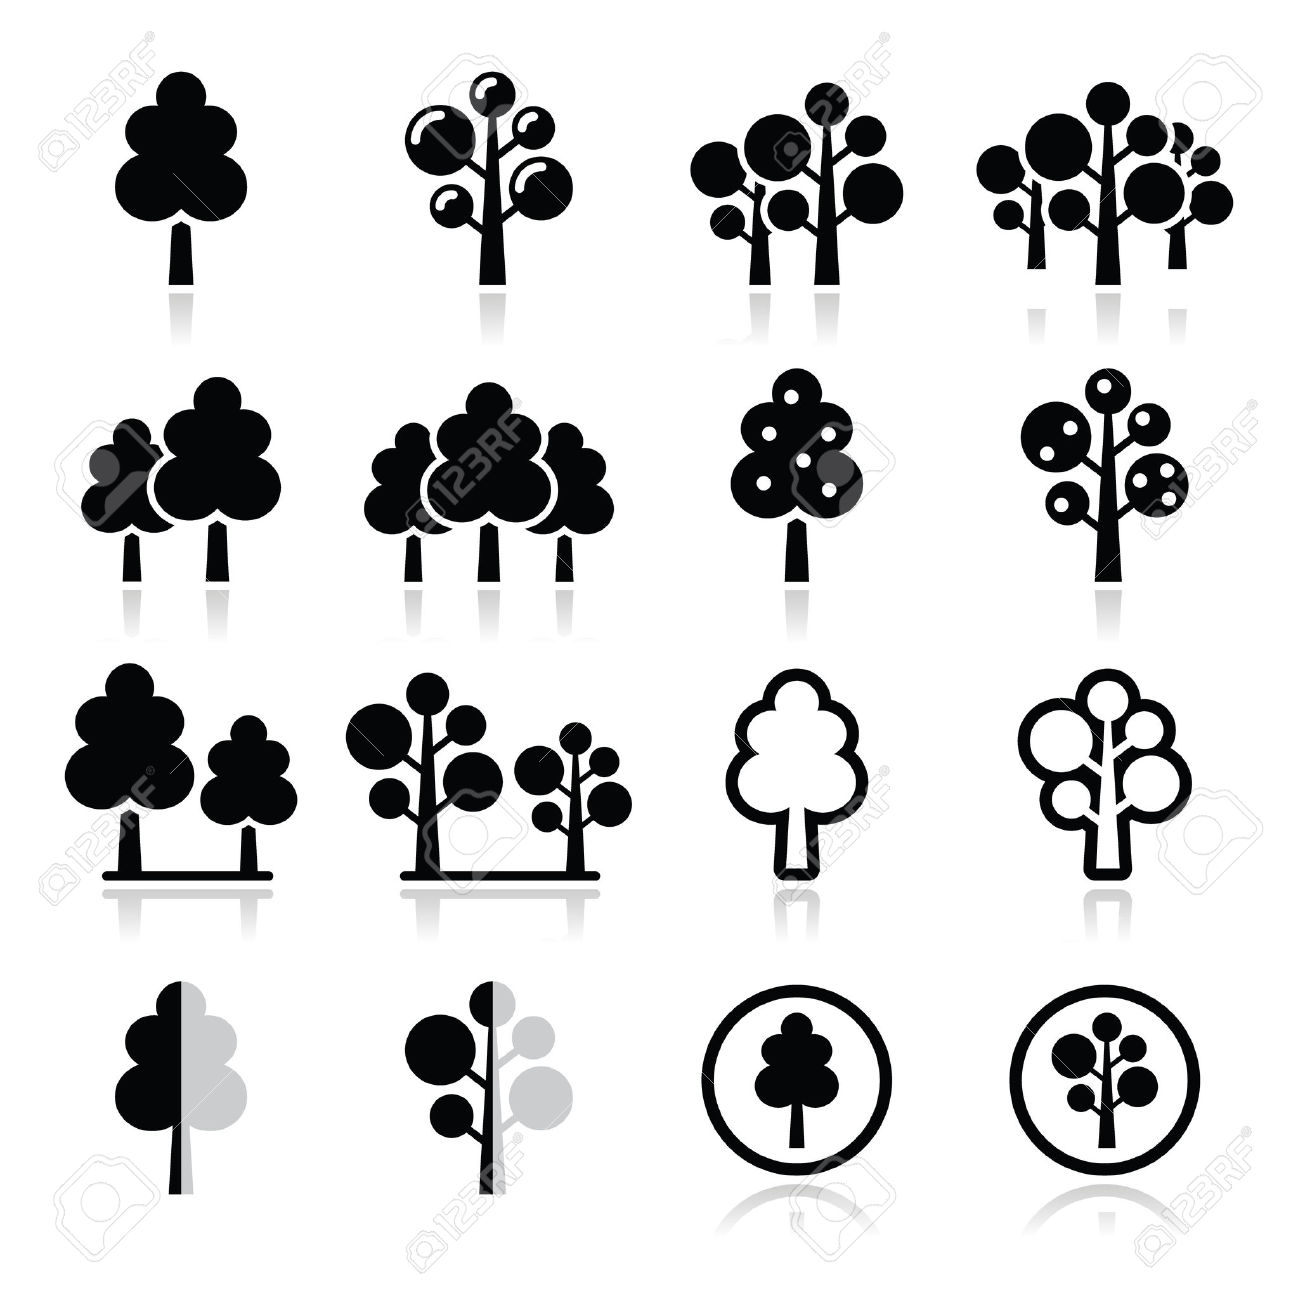 Tree Silhouette Vector SVG Icon - SVGRepo Free SVG Vectors